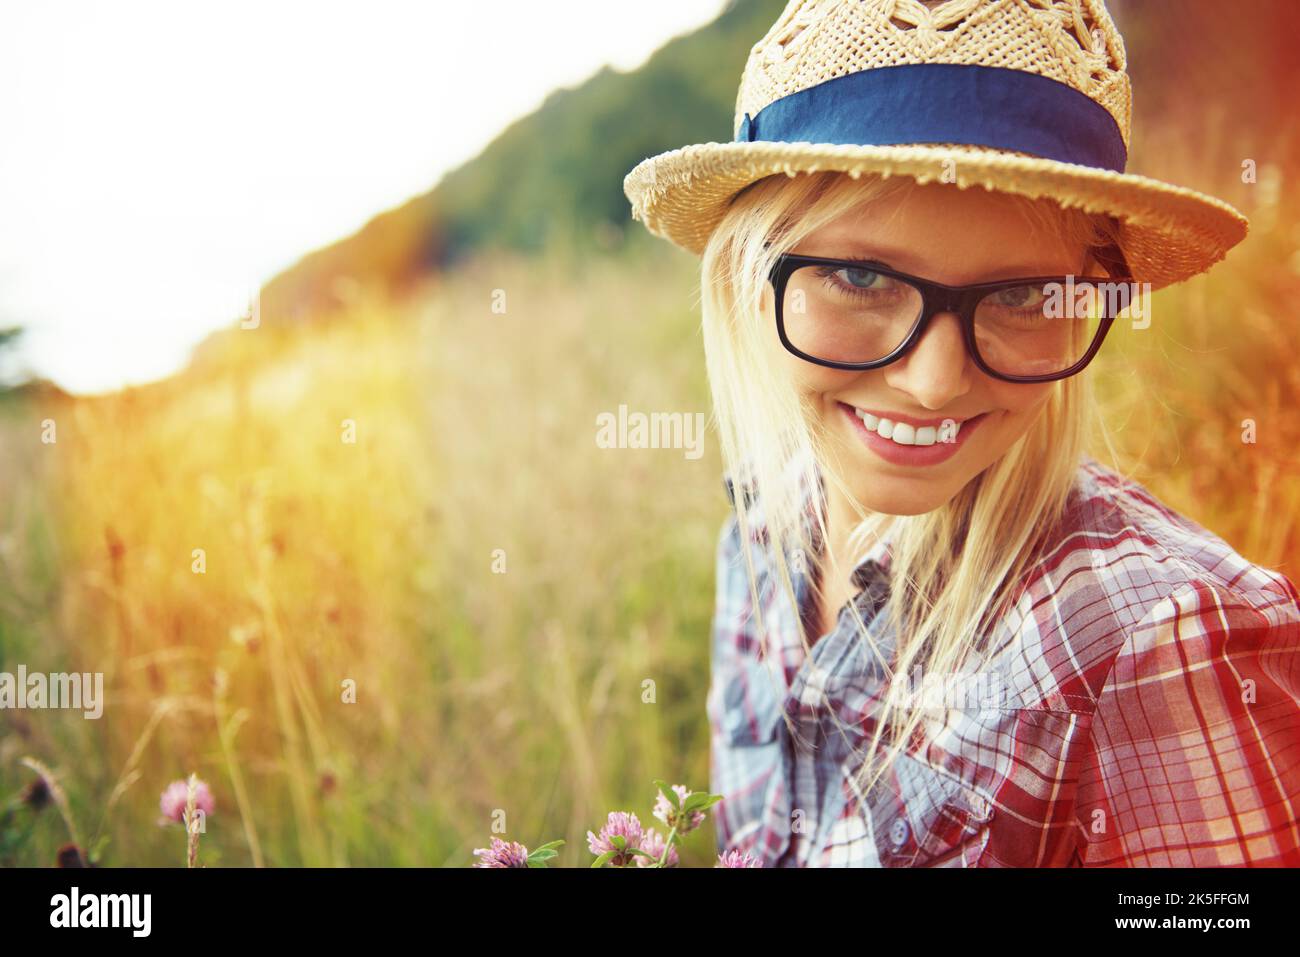 Kleine Stadt irgendwie Mädchen. Schöne junge Hipster in einem Feld - Lomo-Stil Fotografie. Stockfoto